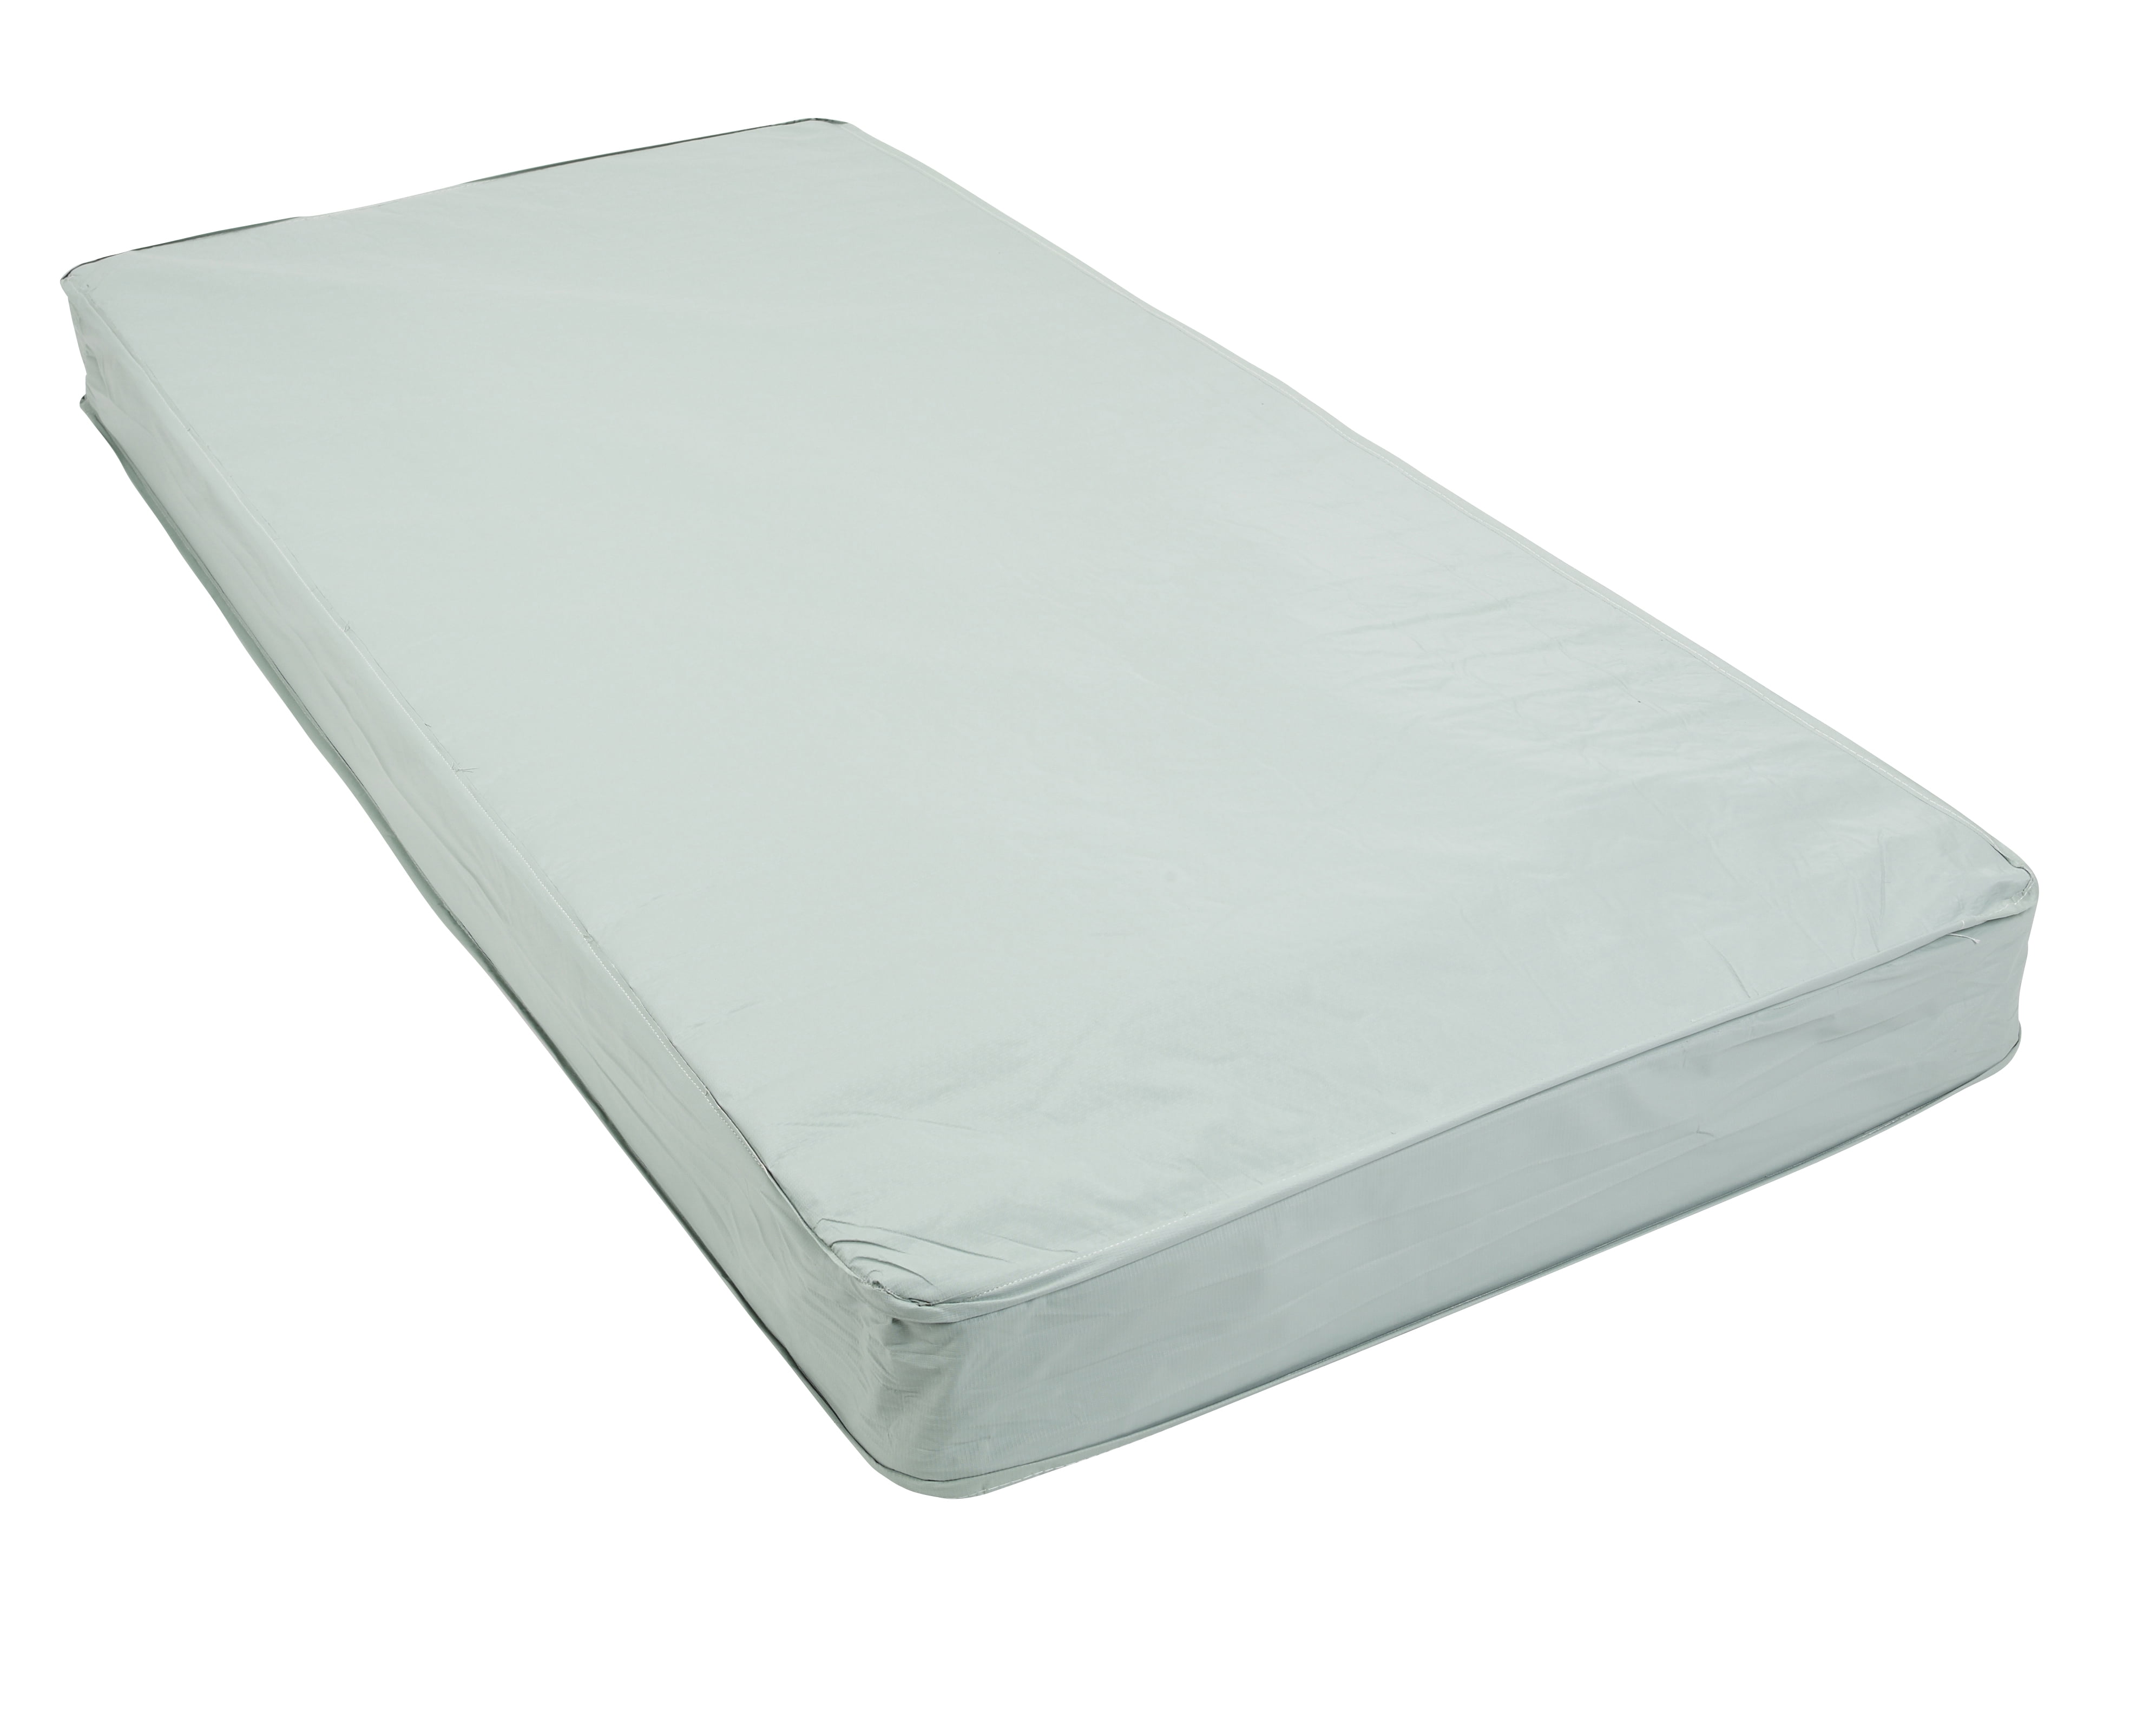 36 x 80 foam mattress